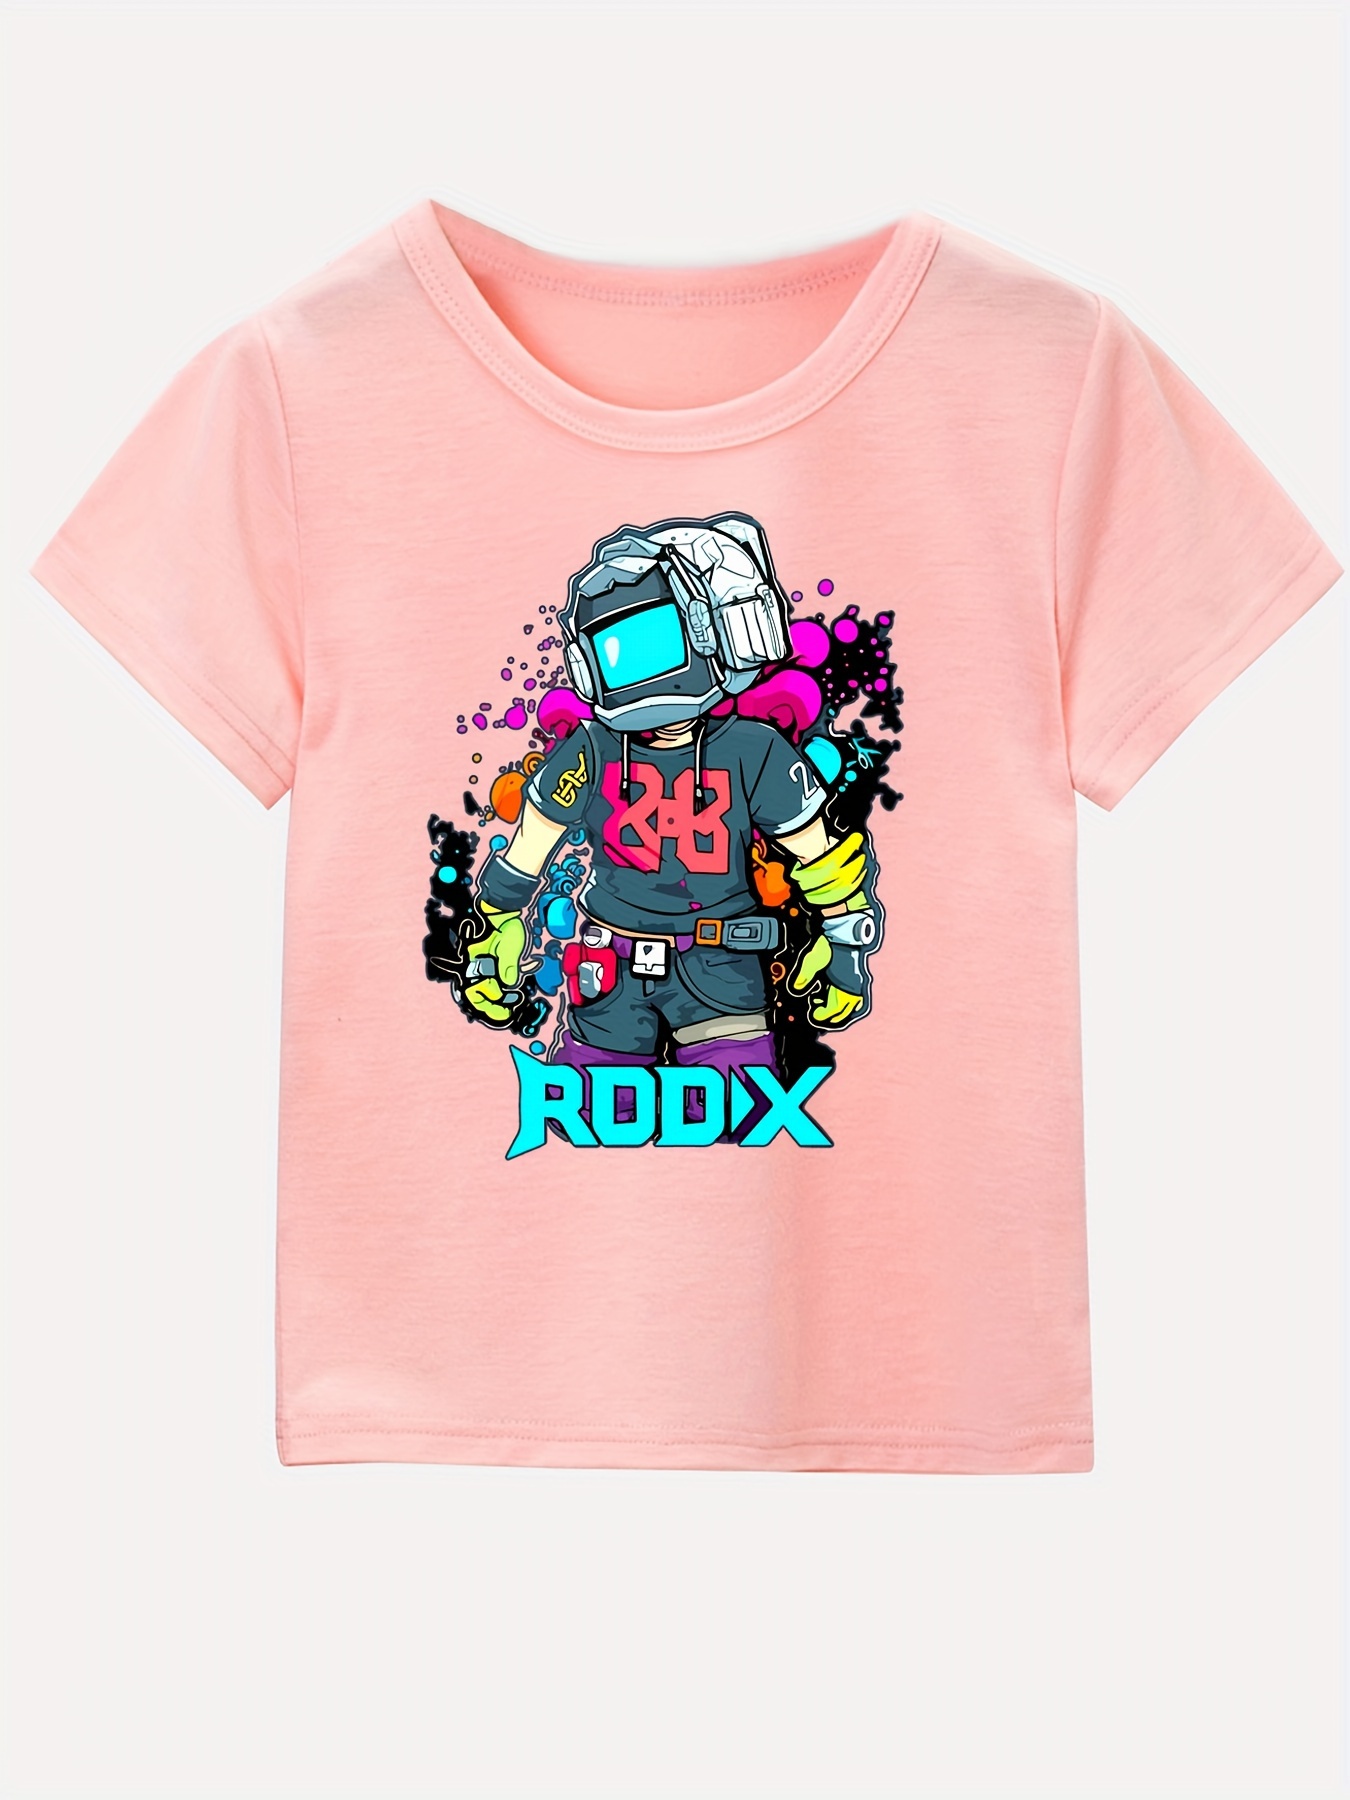 Roblox Short Sleeve T-shirt Boys Kids Summer Tee Crew Neck Tops